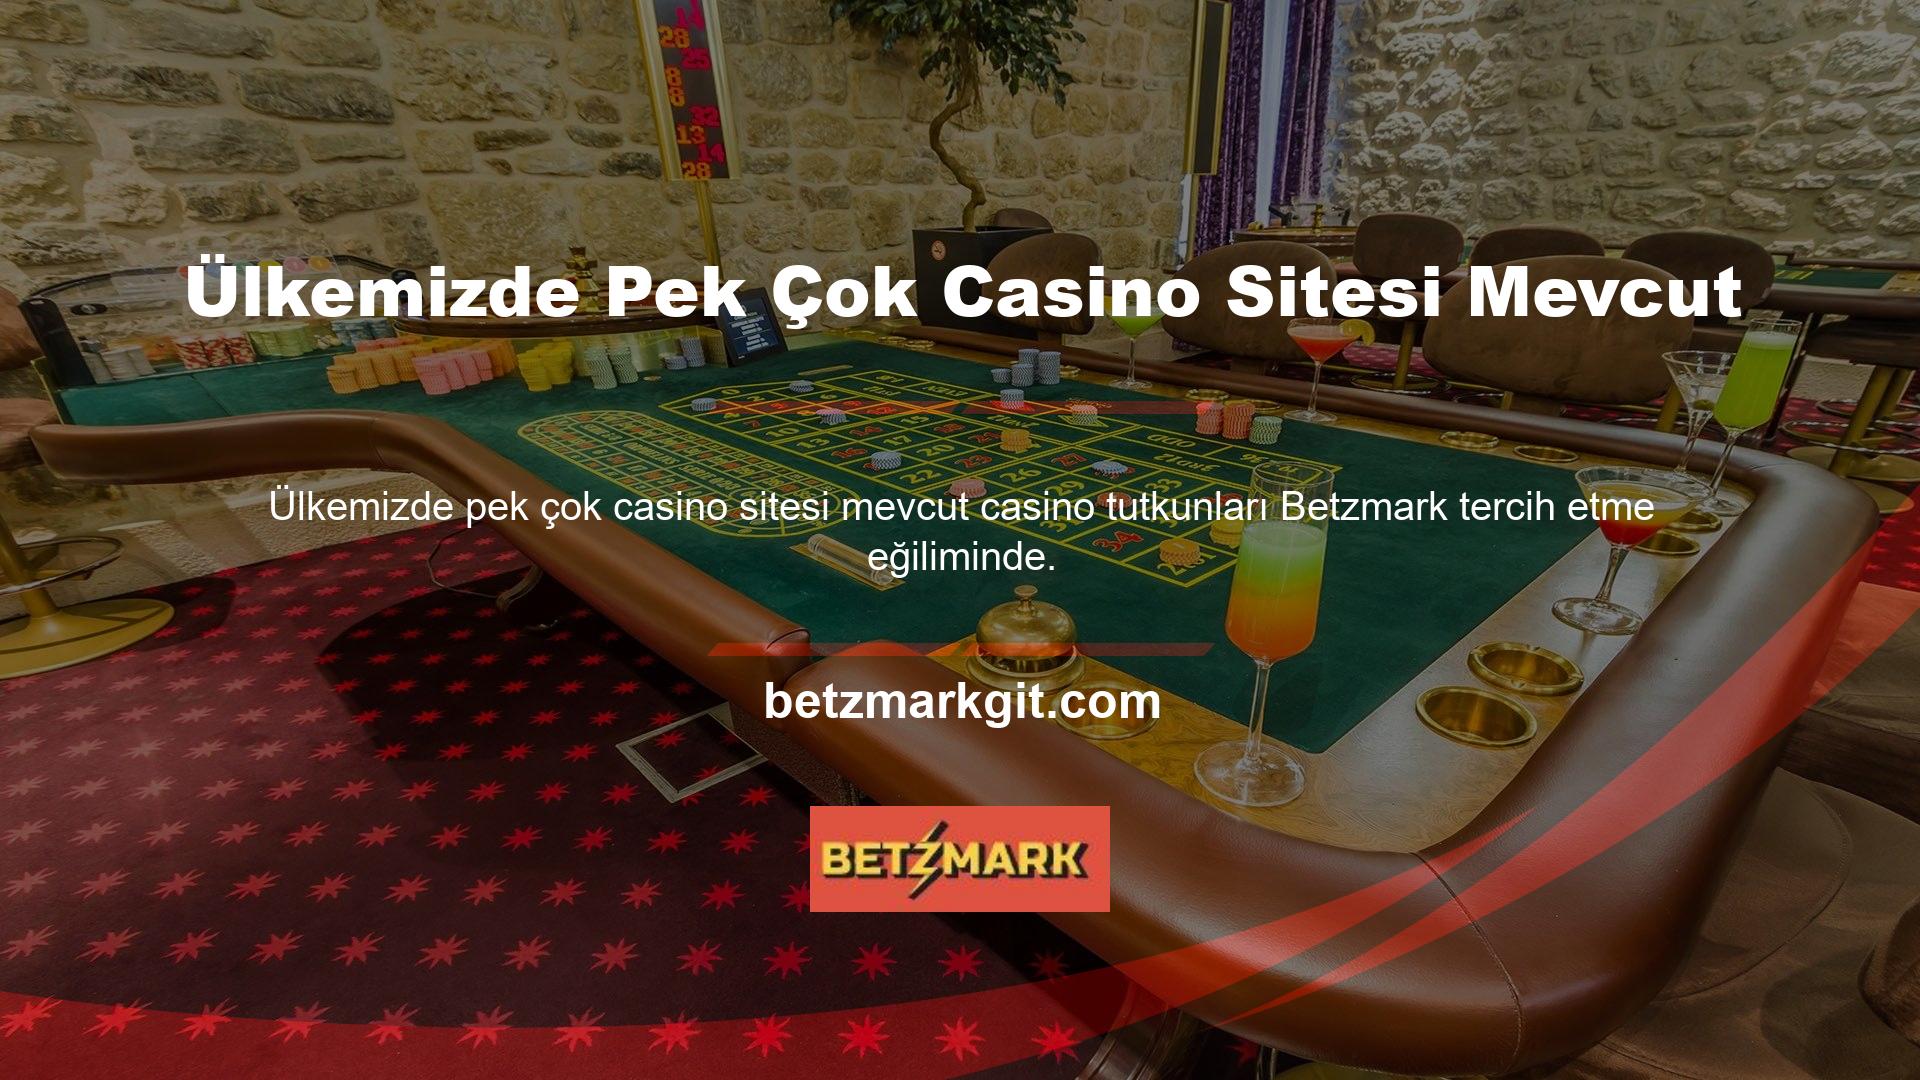 Betzmark web sitesinin temel amacı kullanıcının güvenini sağlamaktır